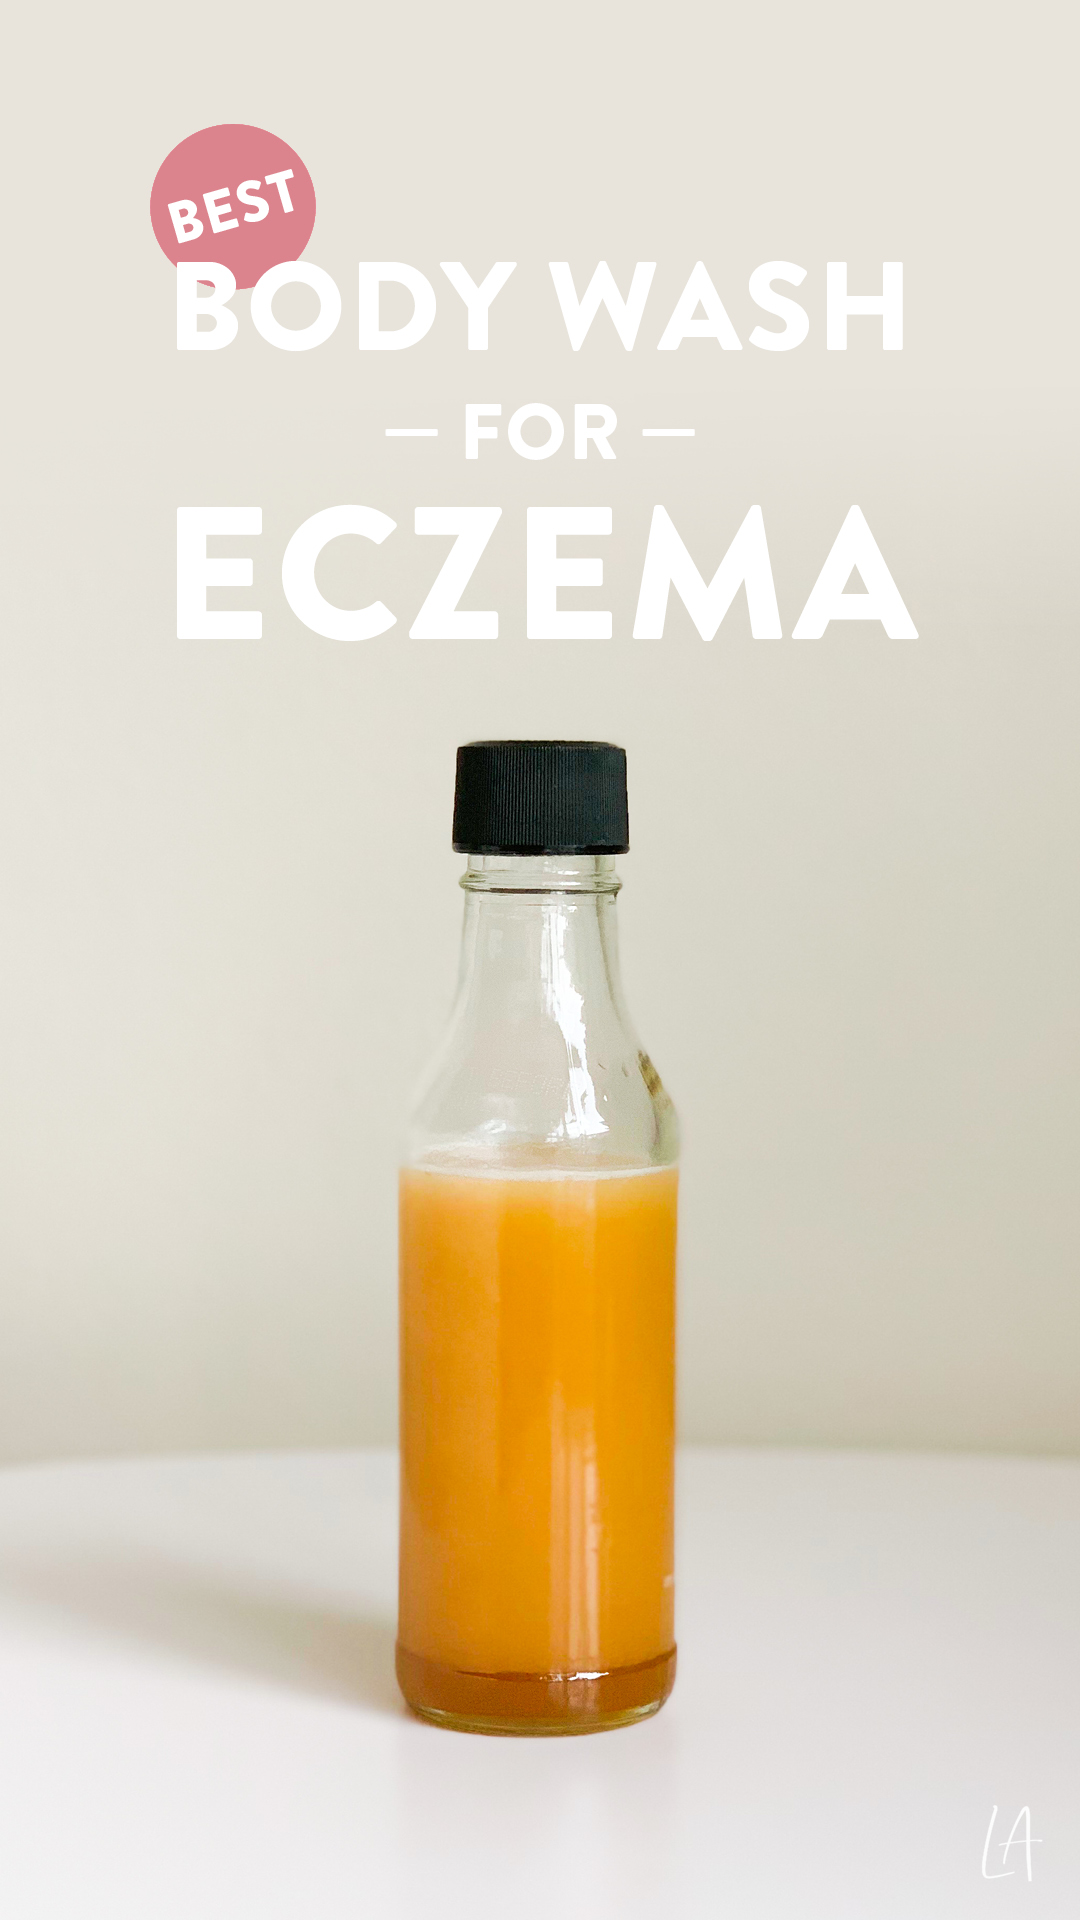 Best body wash for eczema